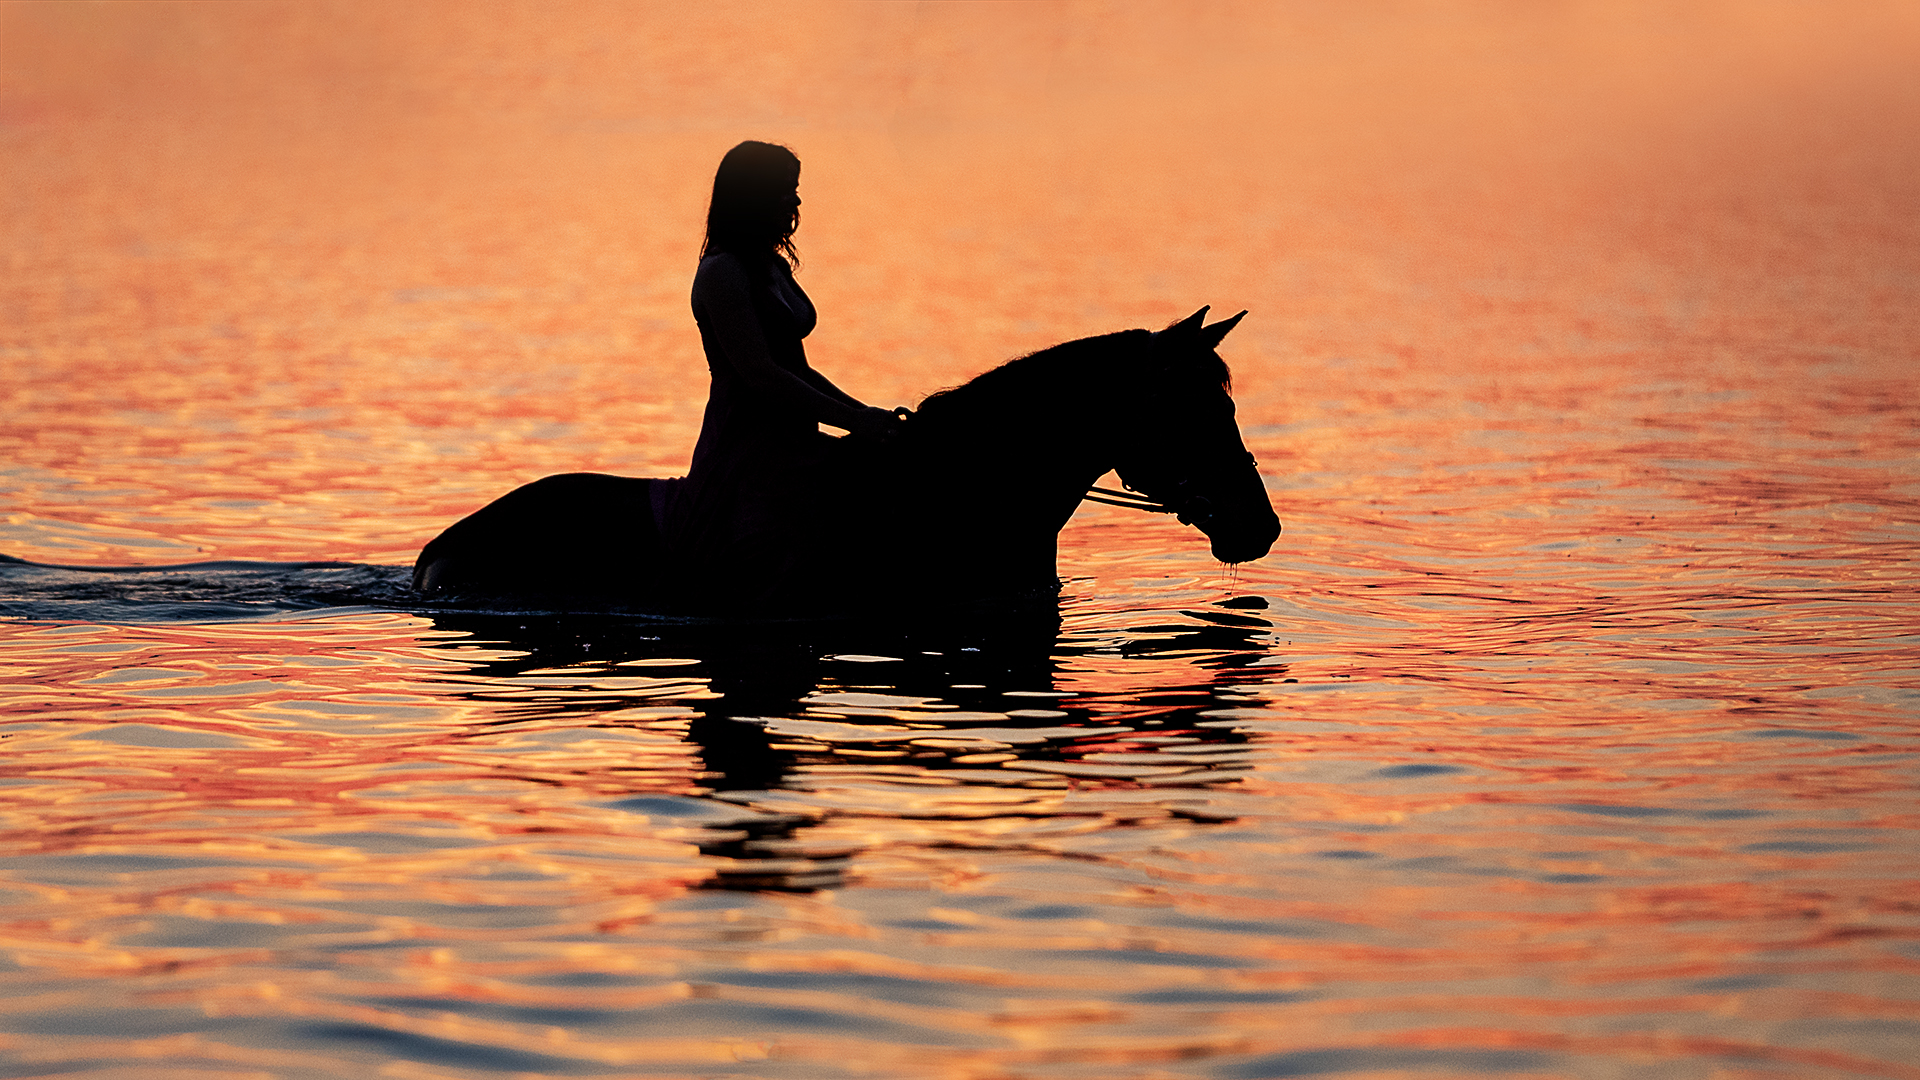 Linda Wiesner – Sunset Lake Ride – 3RD